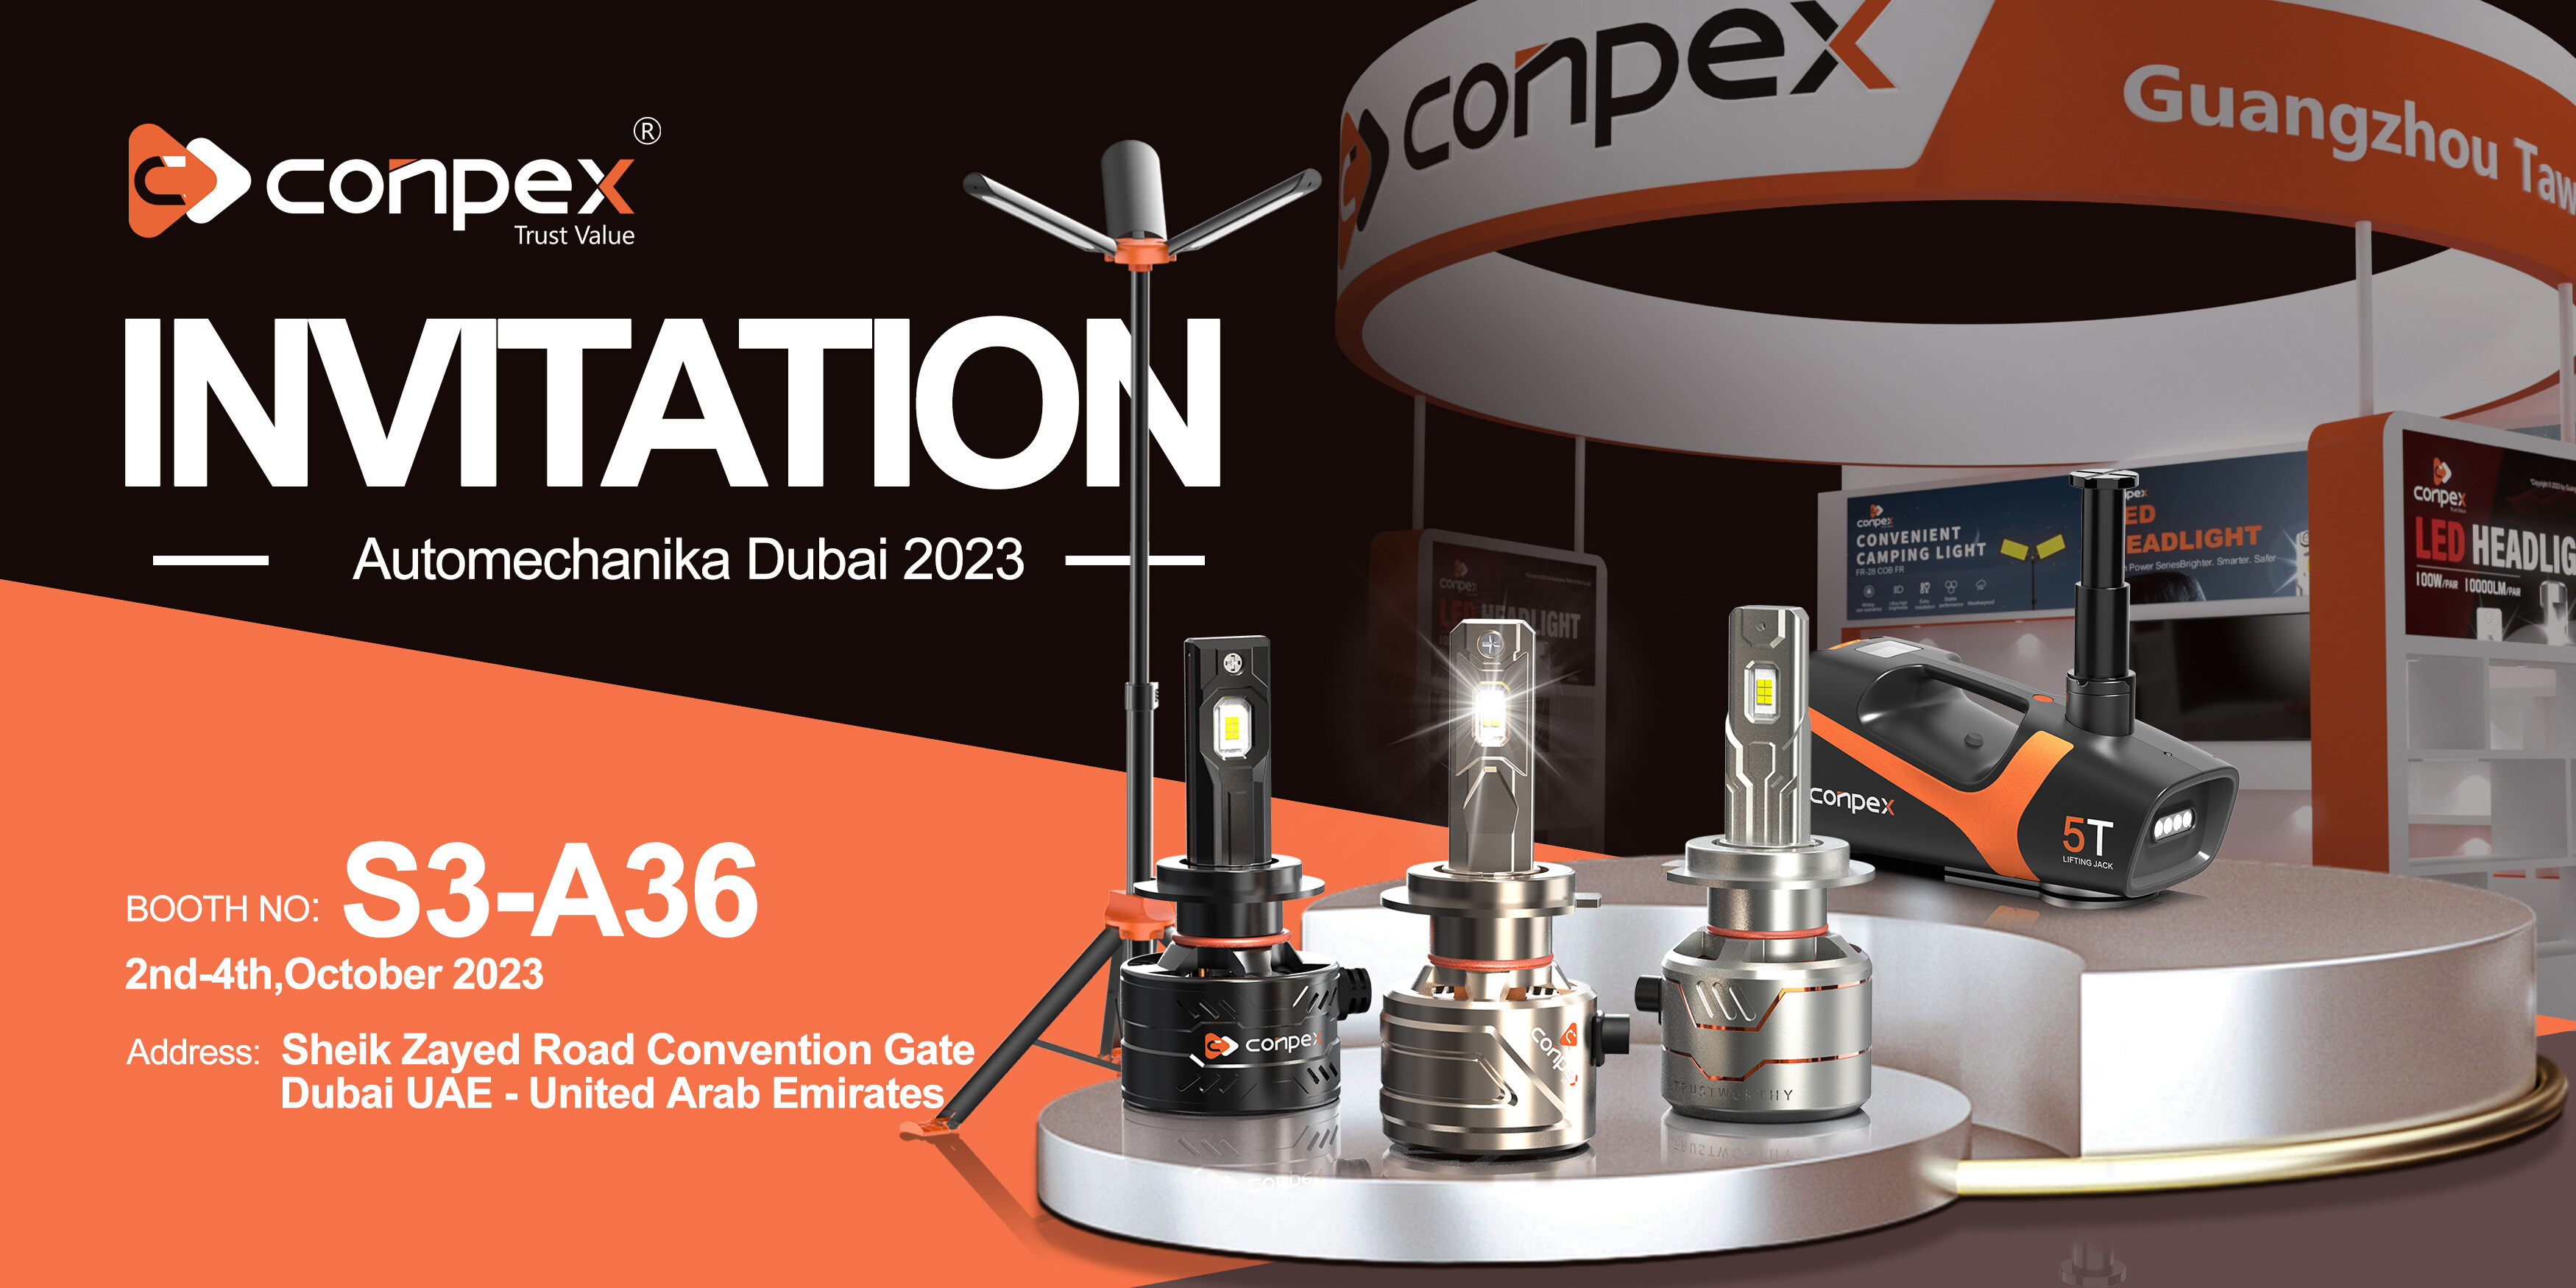 Join Conpex at Automechanika Dubai 2023!